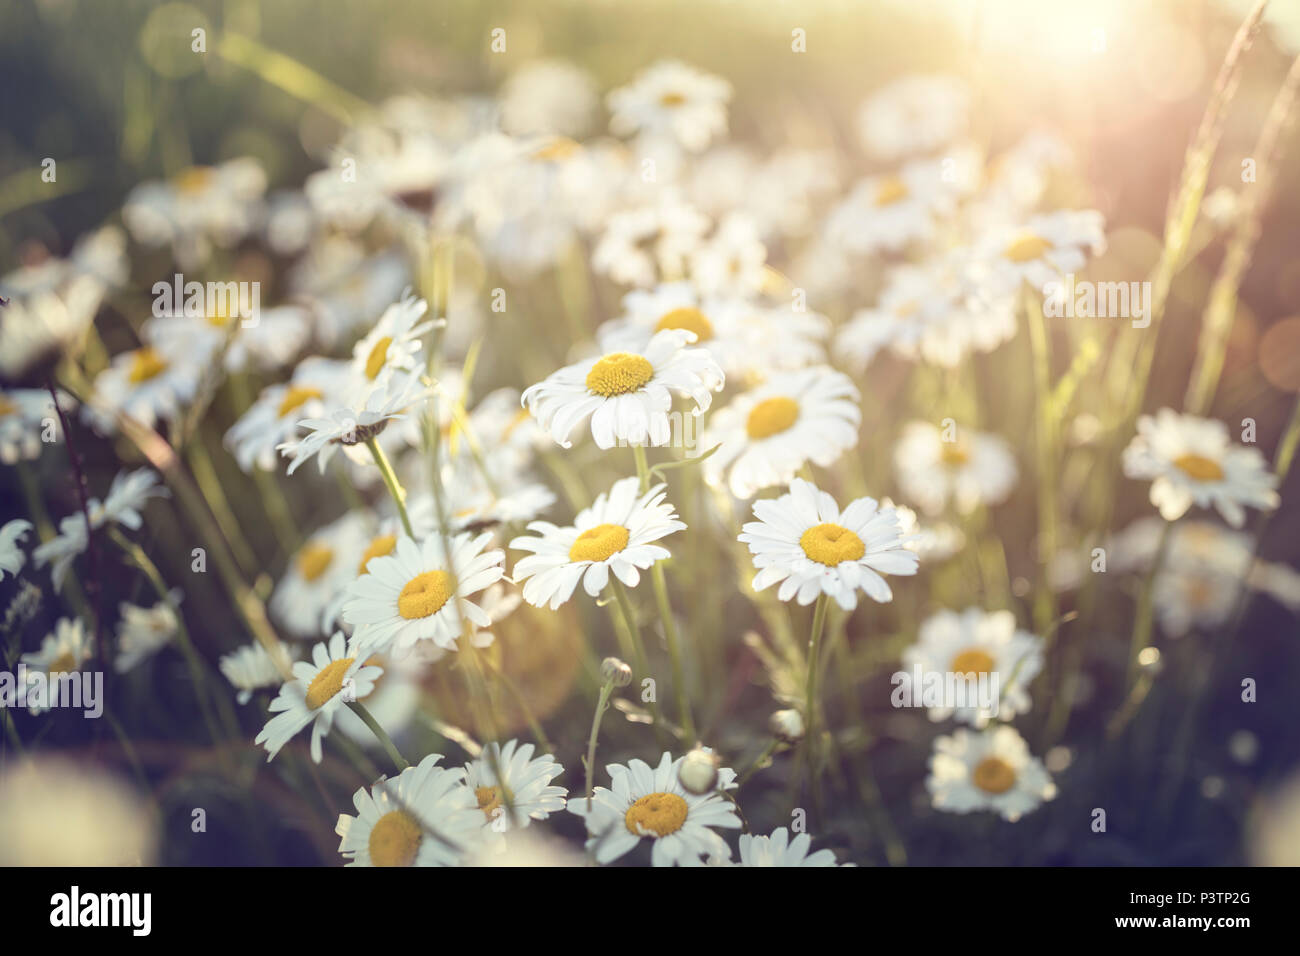 Bereich der daisy flowers gegen die Sonne Hintergrund Stockfoto